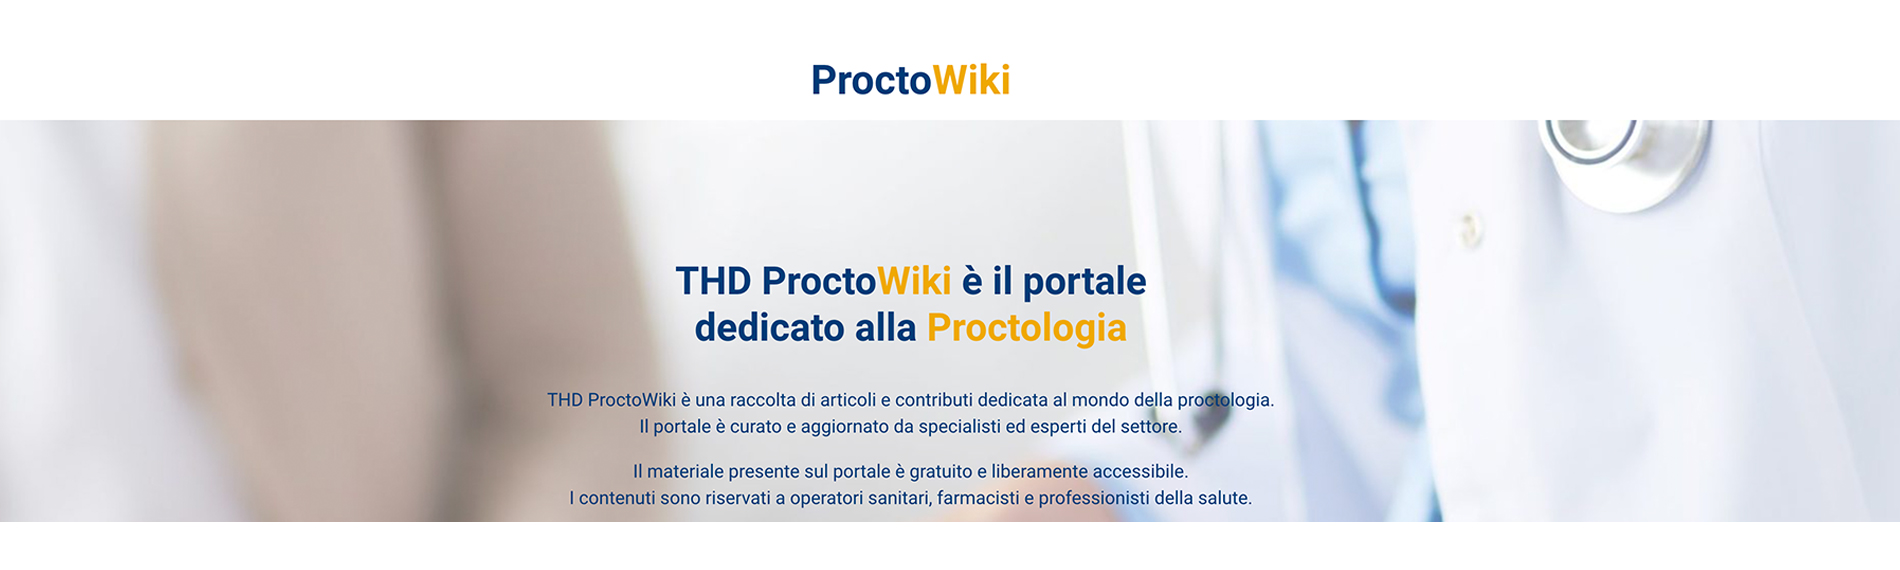 THD ProctoWiki: il Portale della Proctologia